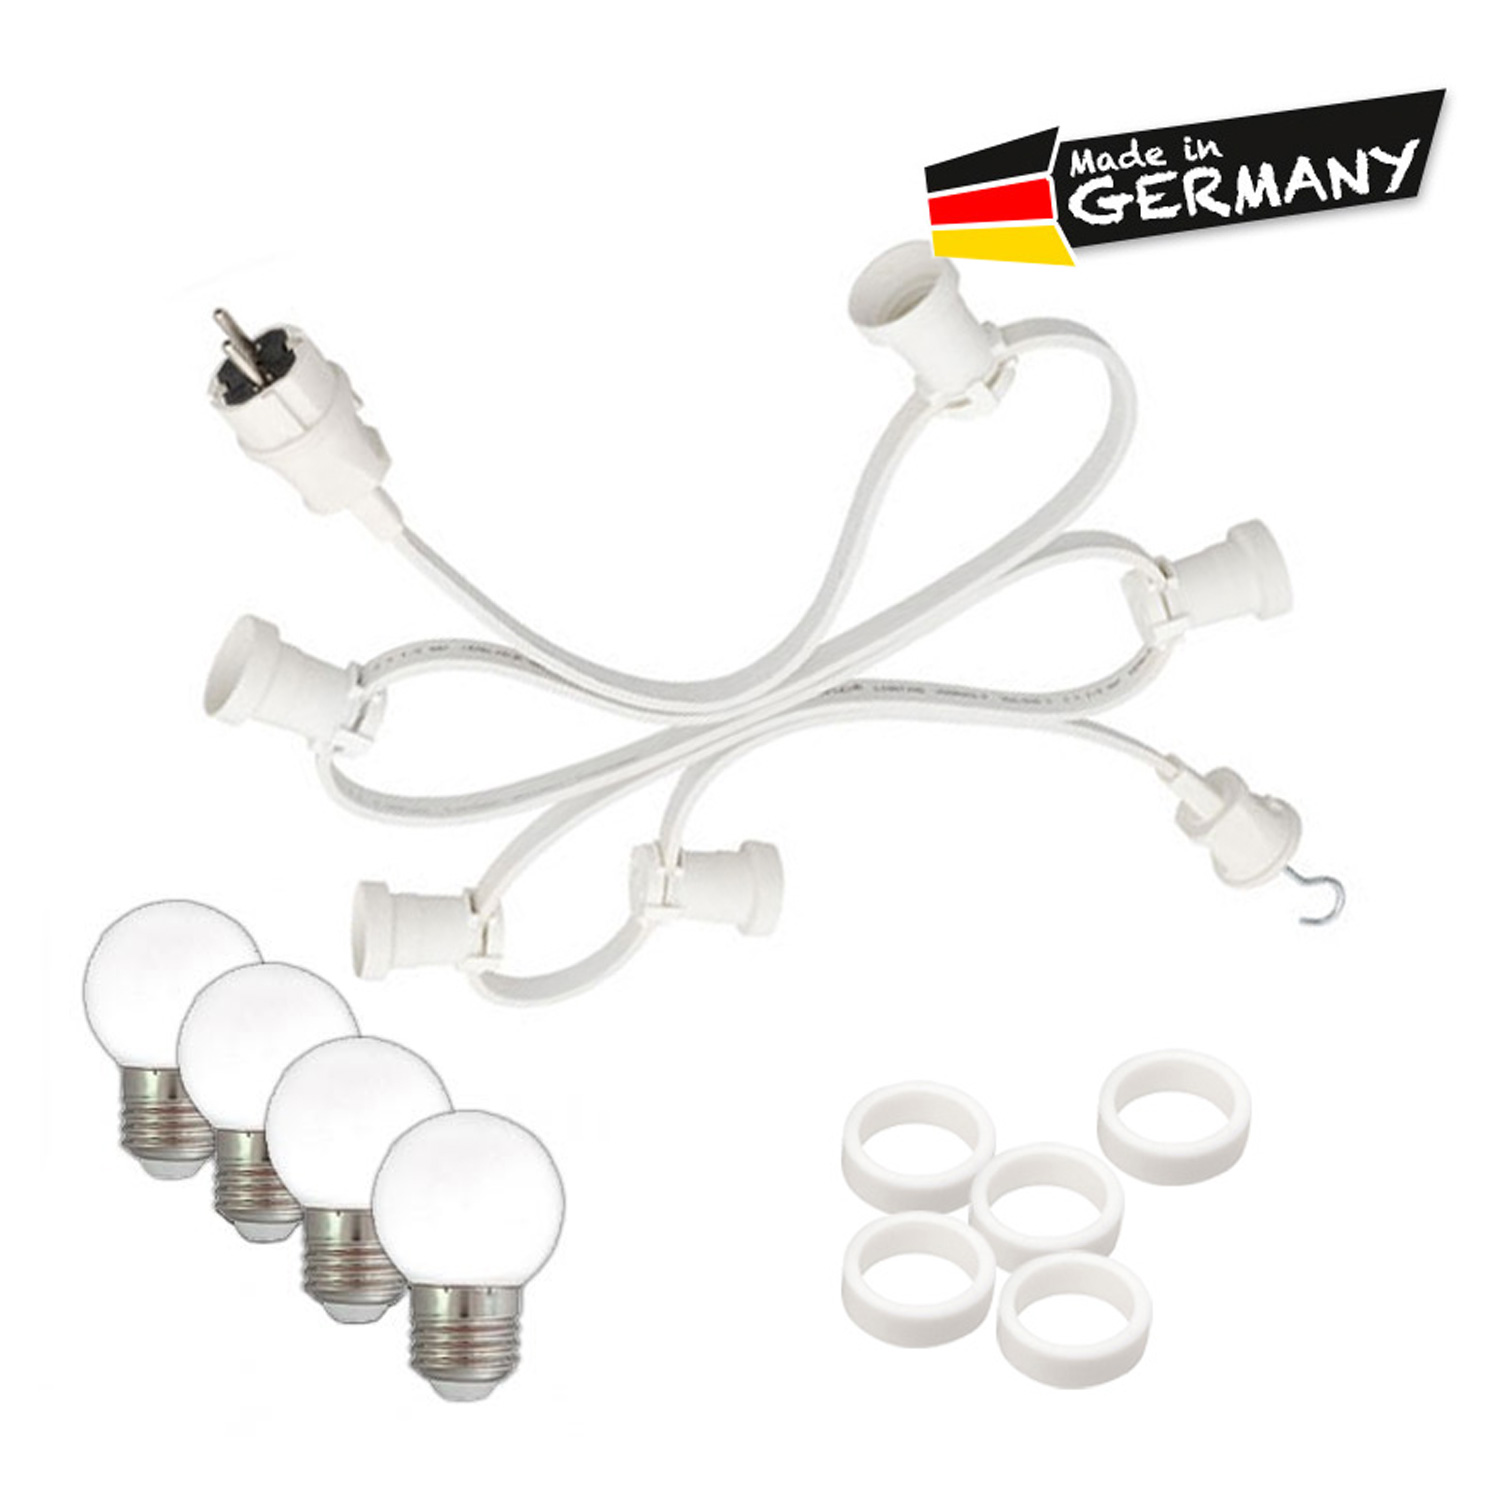 Illu-/Partylichterkette 5m - Außenlichterkette - Made in Germany - 10 x warmweiße LED Kugellampen